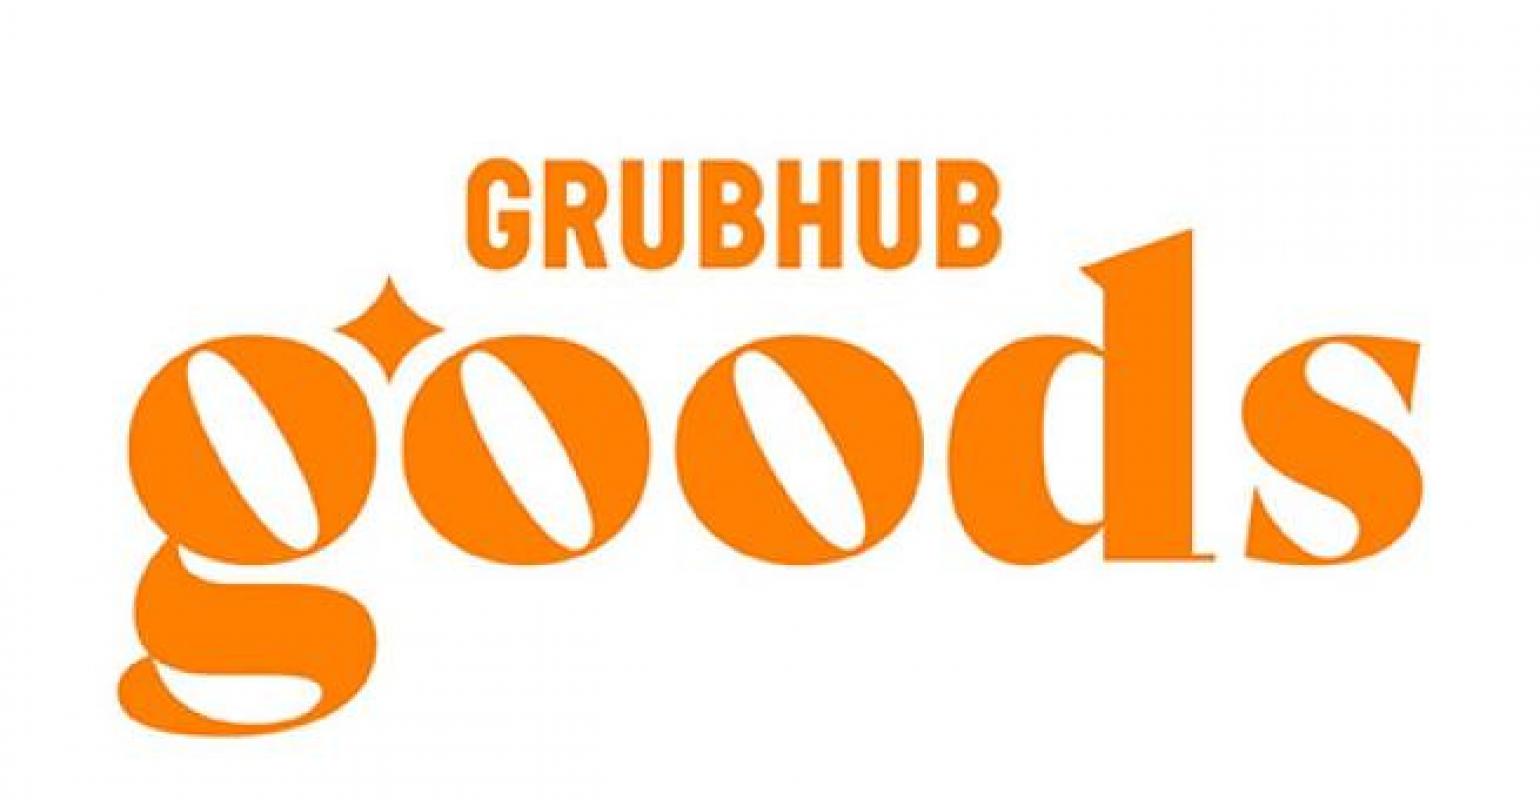 grubhub_goods_logo_teaser.jpg